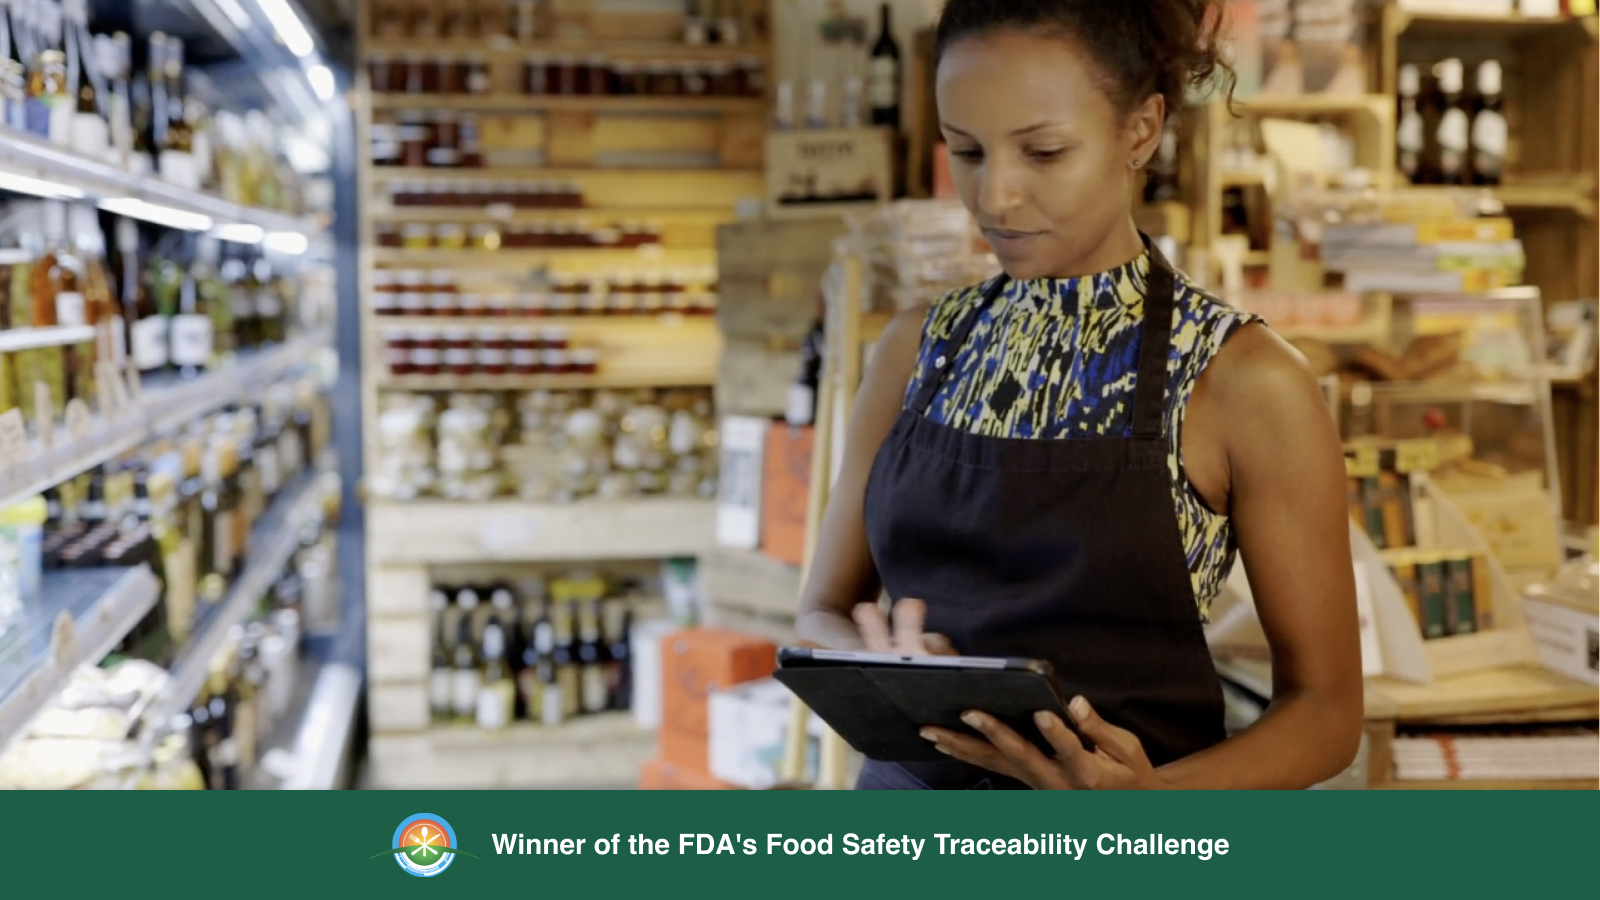 Vencedor do Desafio de Rastreabilidade de Segurança Alimentar da FDA